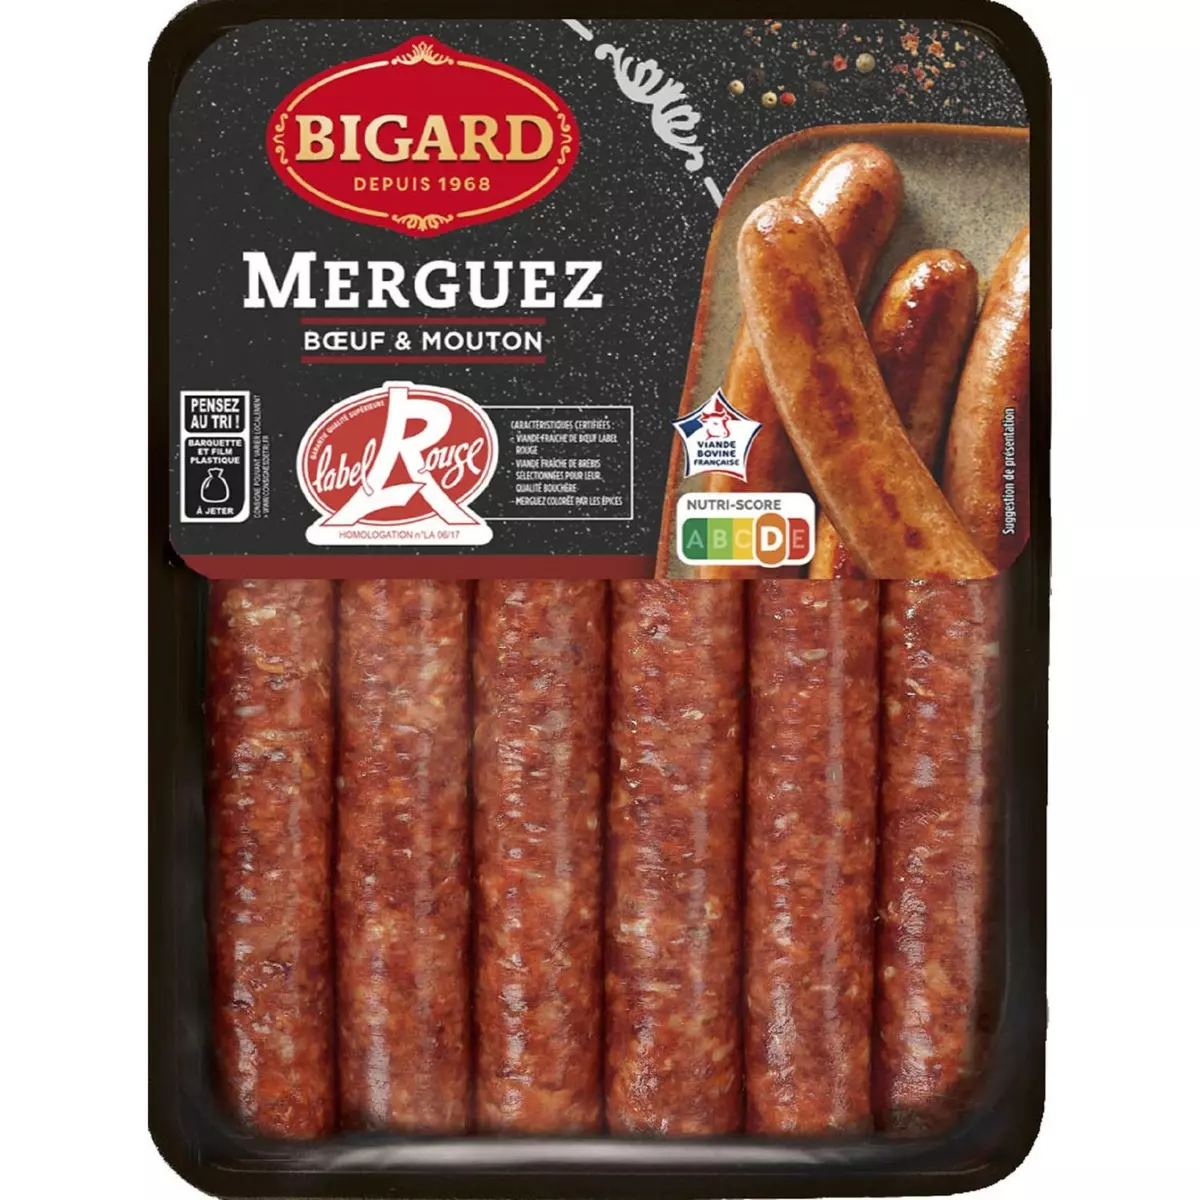 BIGARD Merguez bœuf & mouton Label Rouge 330g